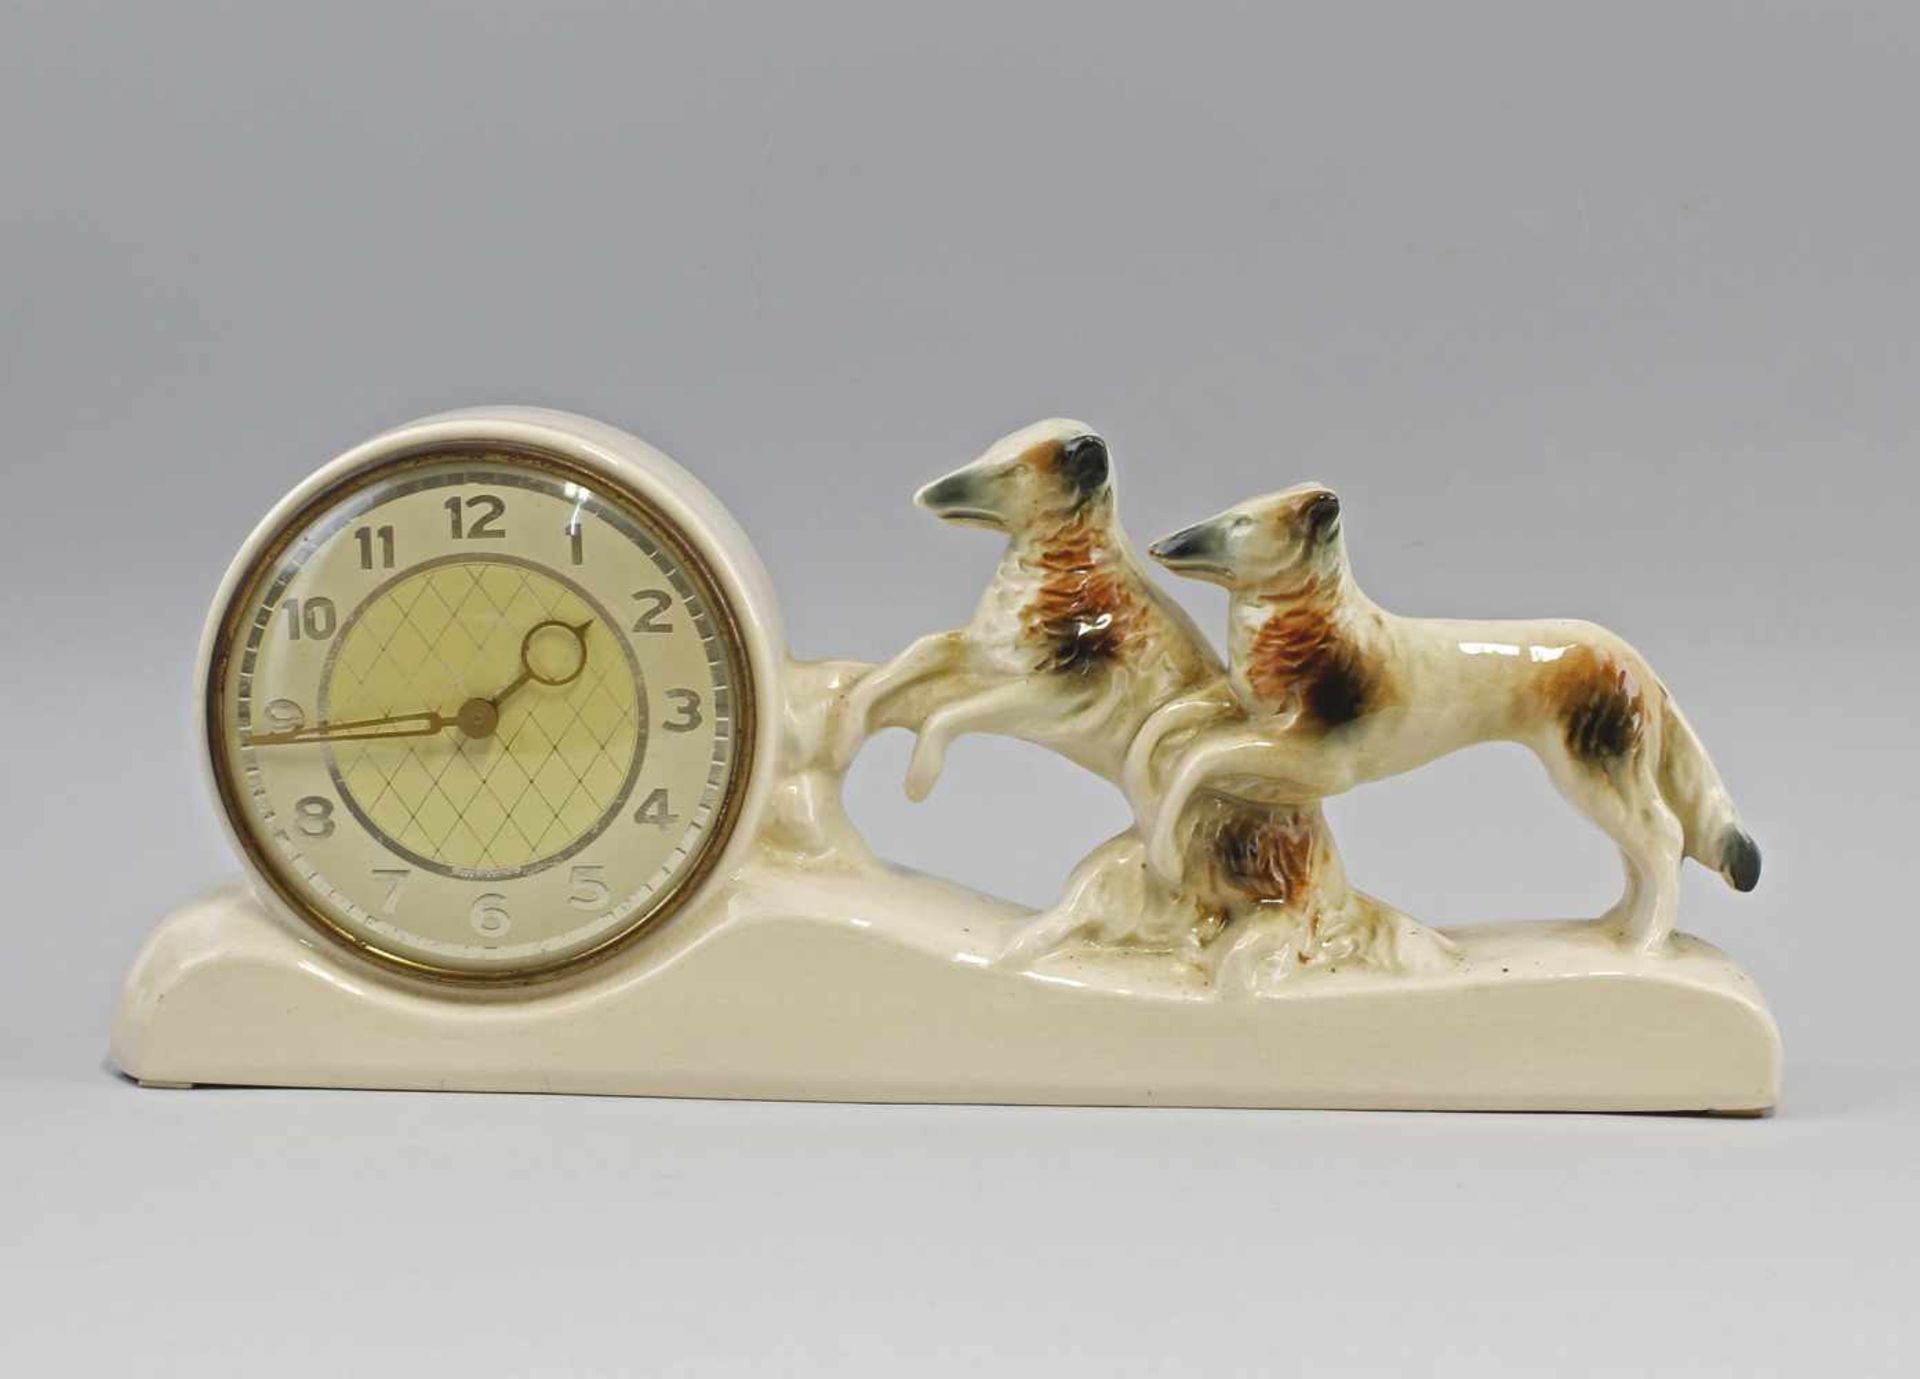 Keramik-Uhr Windhunde: um 1920/40, ungemarkt, cremefarb. Keramikgehäuse mit Darstellung von 2